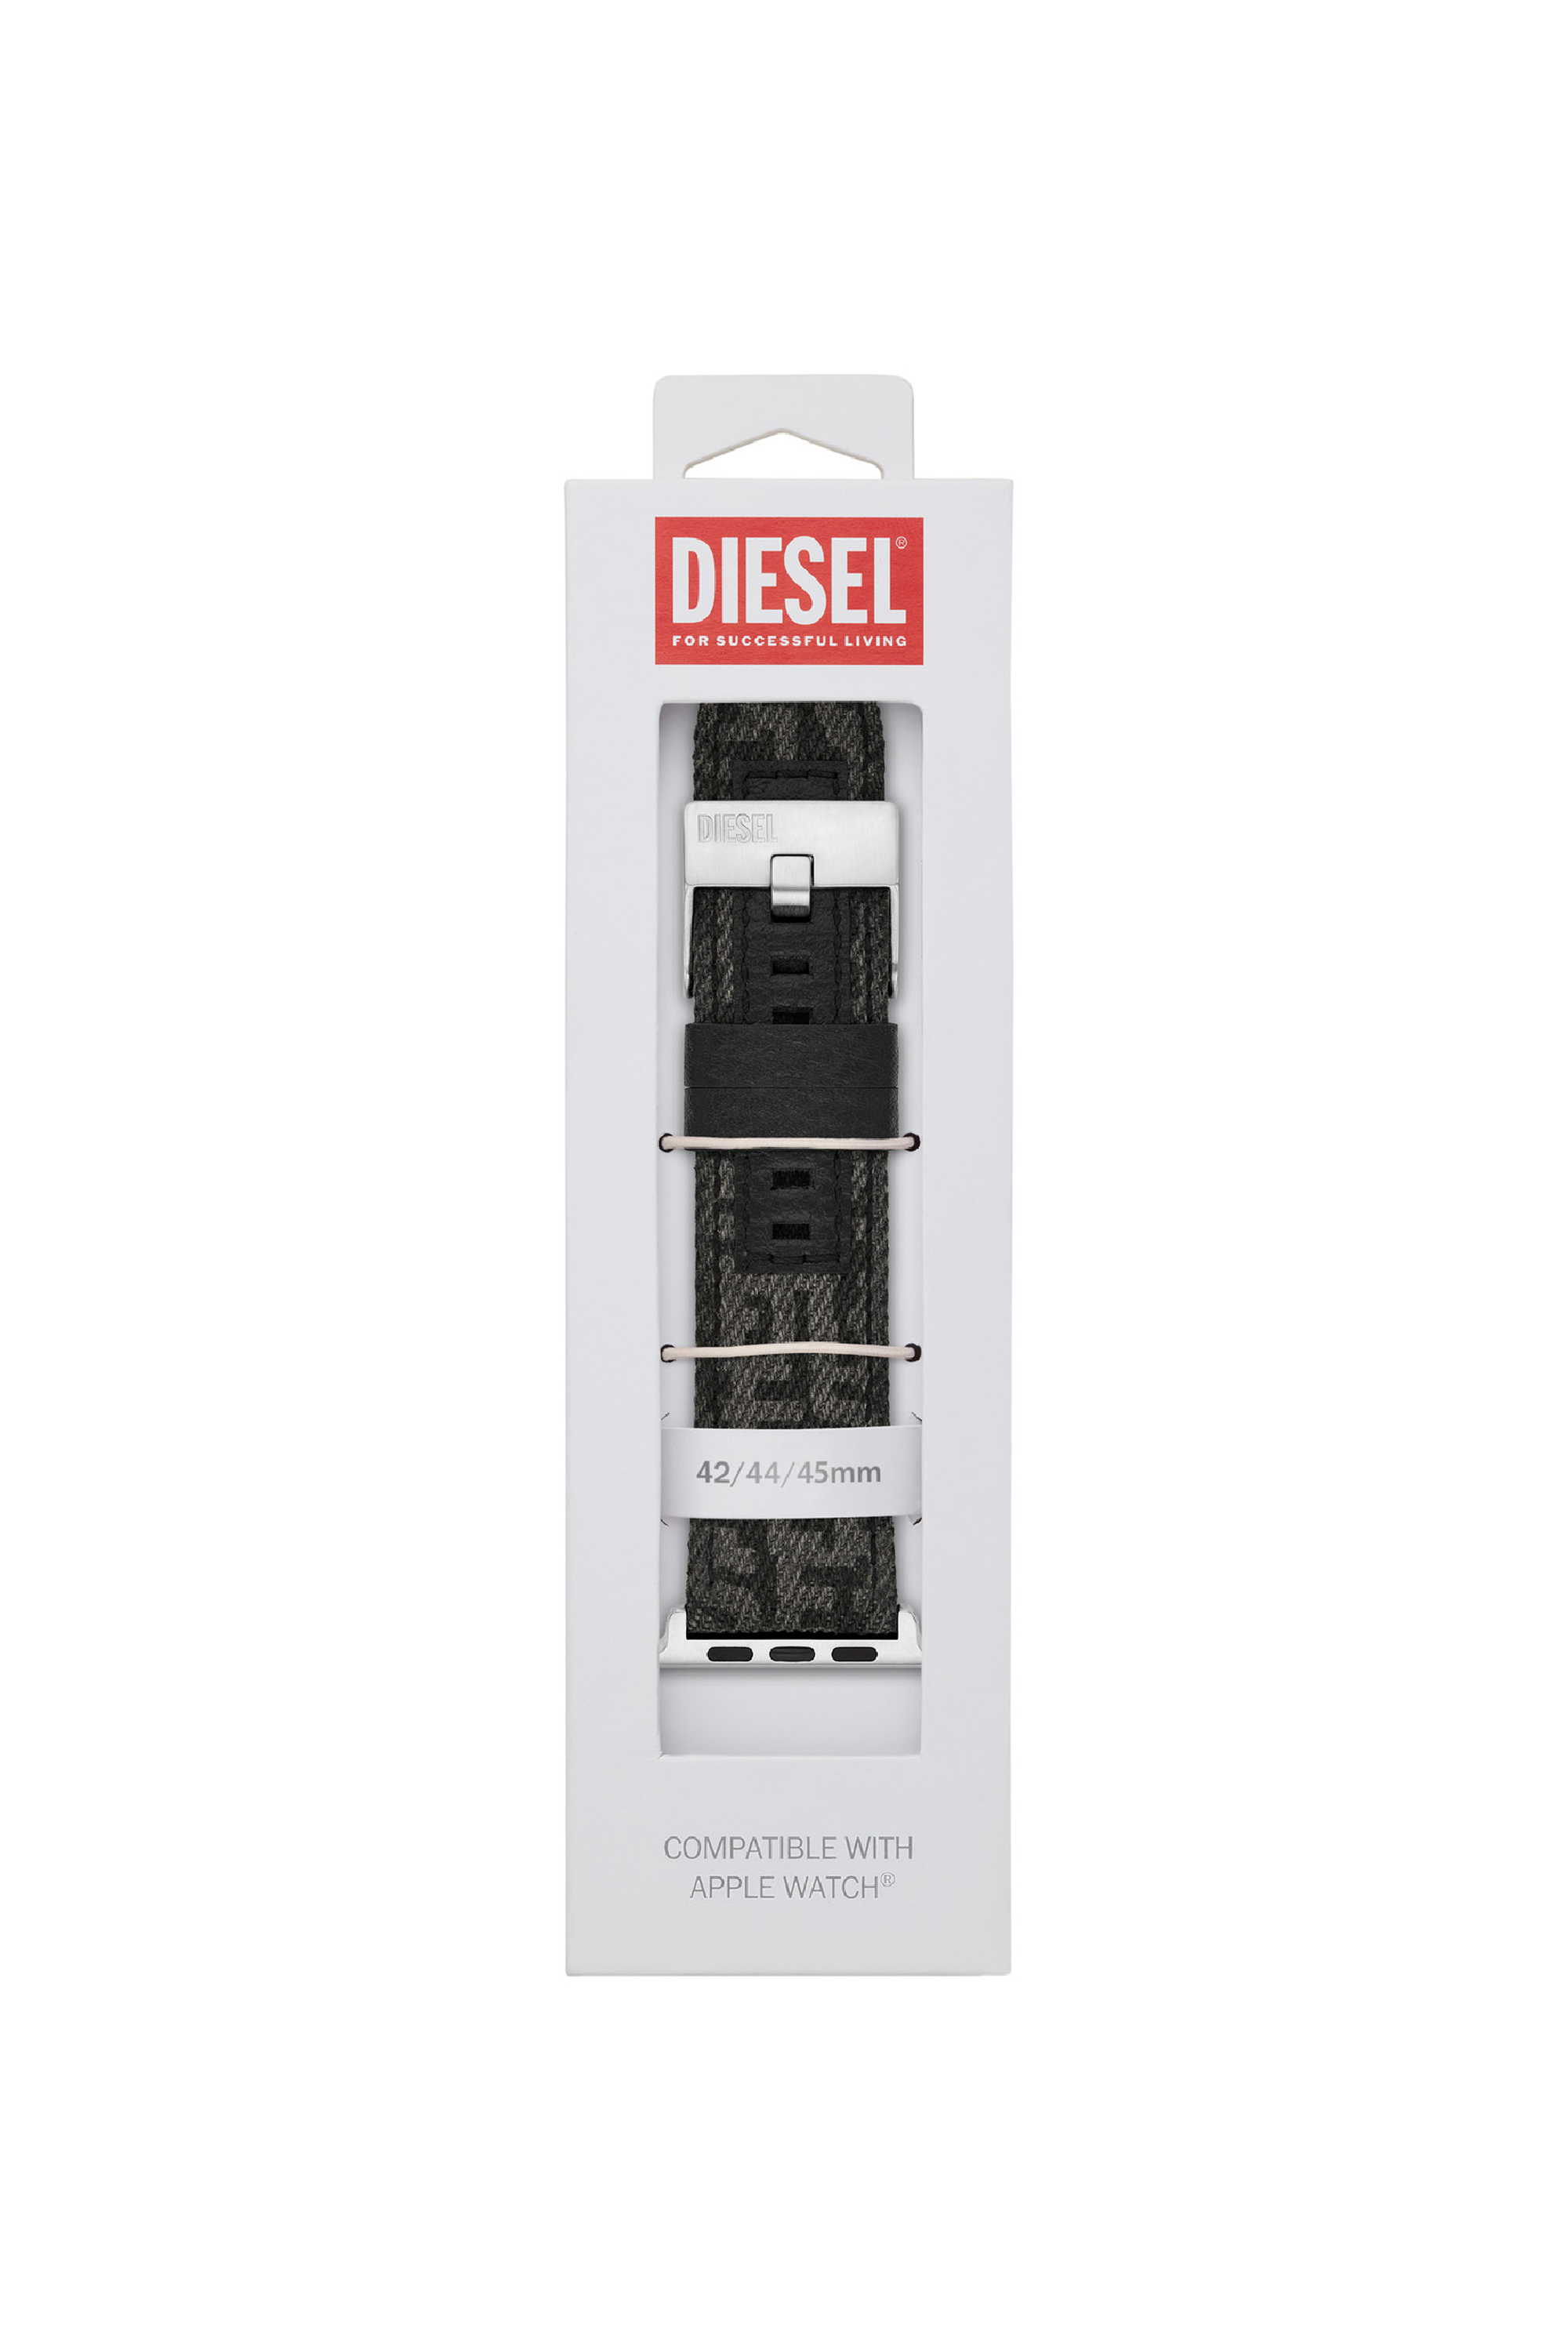 Diesel - DSS0012, Negro - Image 2